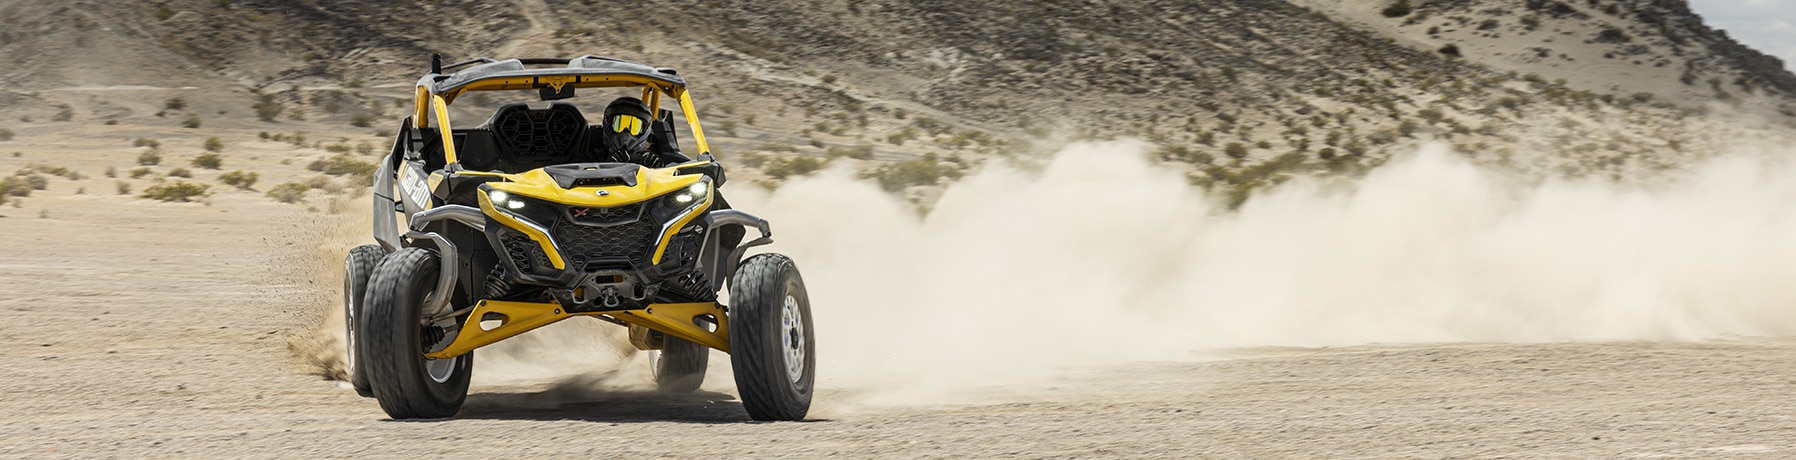 En fører kjører en Can-Am Maverick R i høy hastighet i ørkenen.